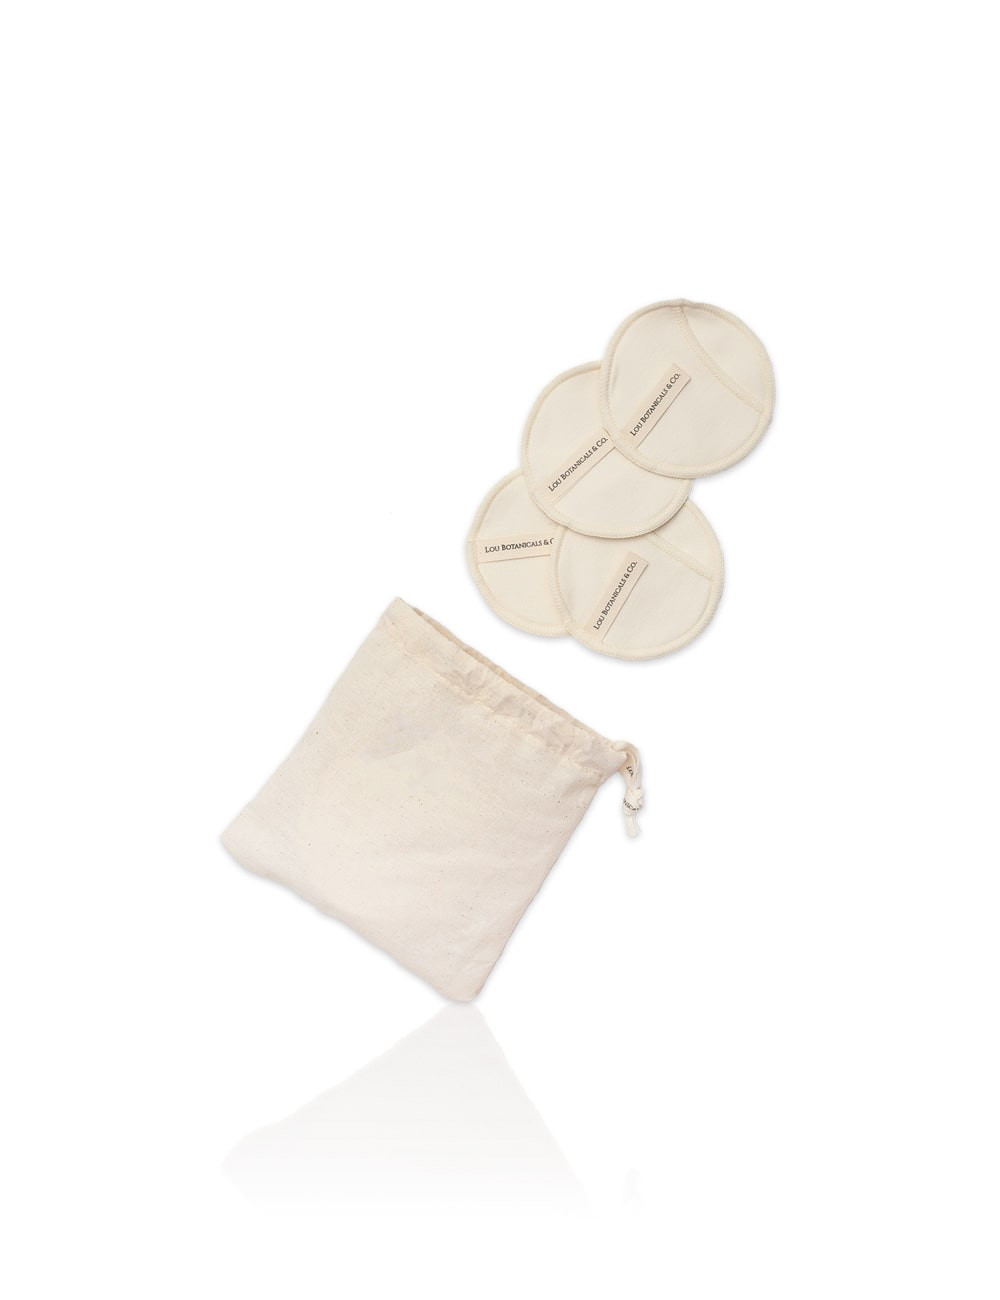 10 discos almohadillas pads de fibra de bambu para limpieza facial